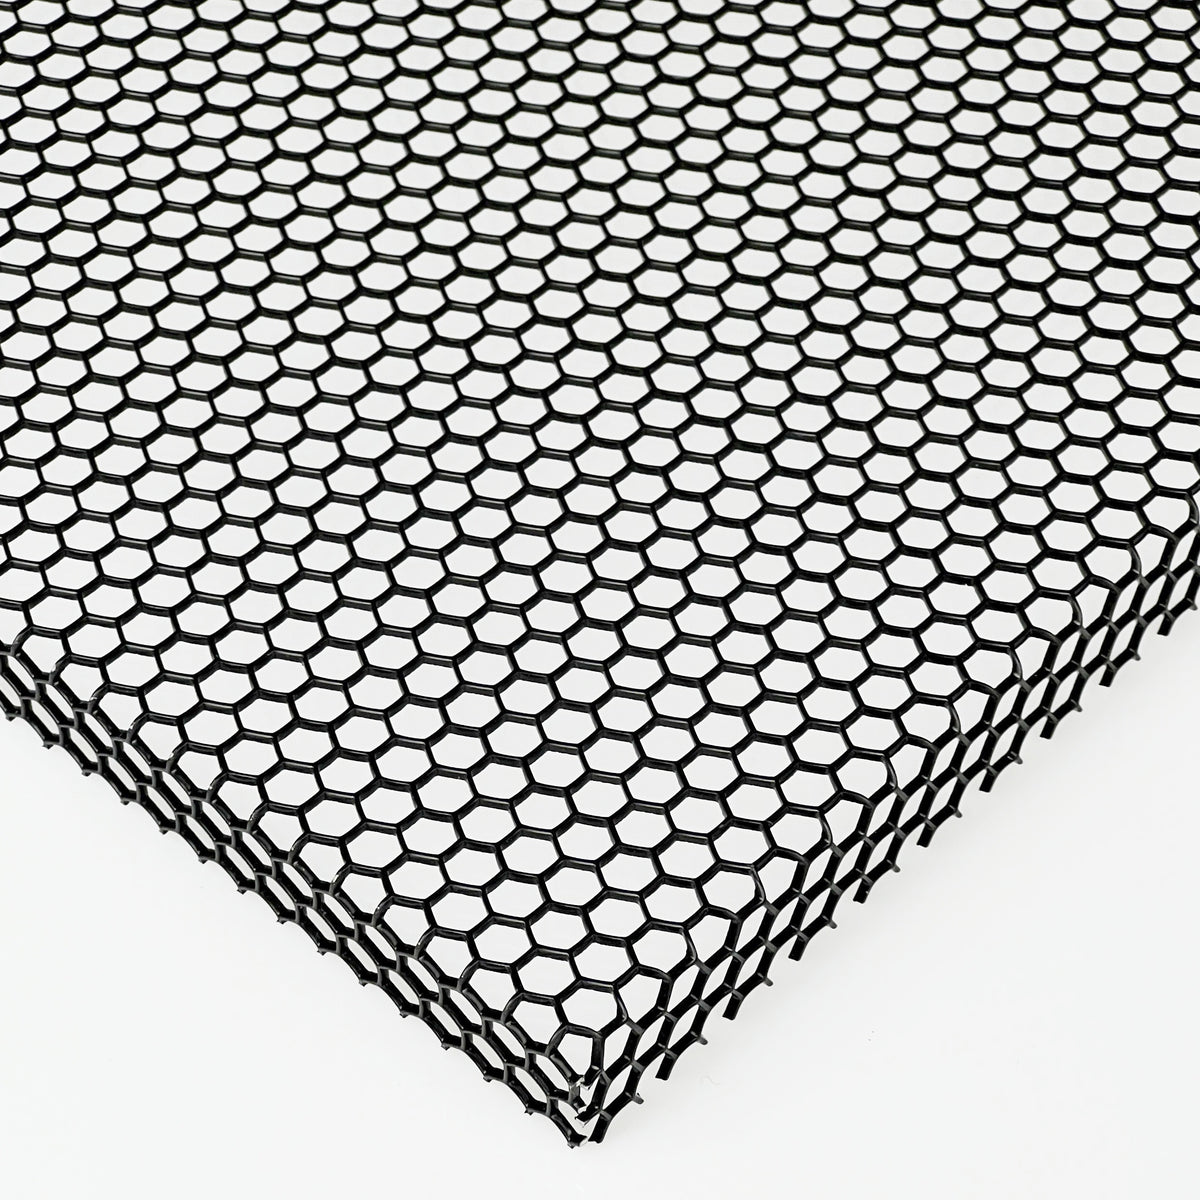 Lochblech Stahl Hexagonal HV6-6,7 200x200x1,5mm Pulverbeschichtet Schwarz  Blech